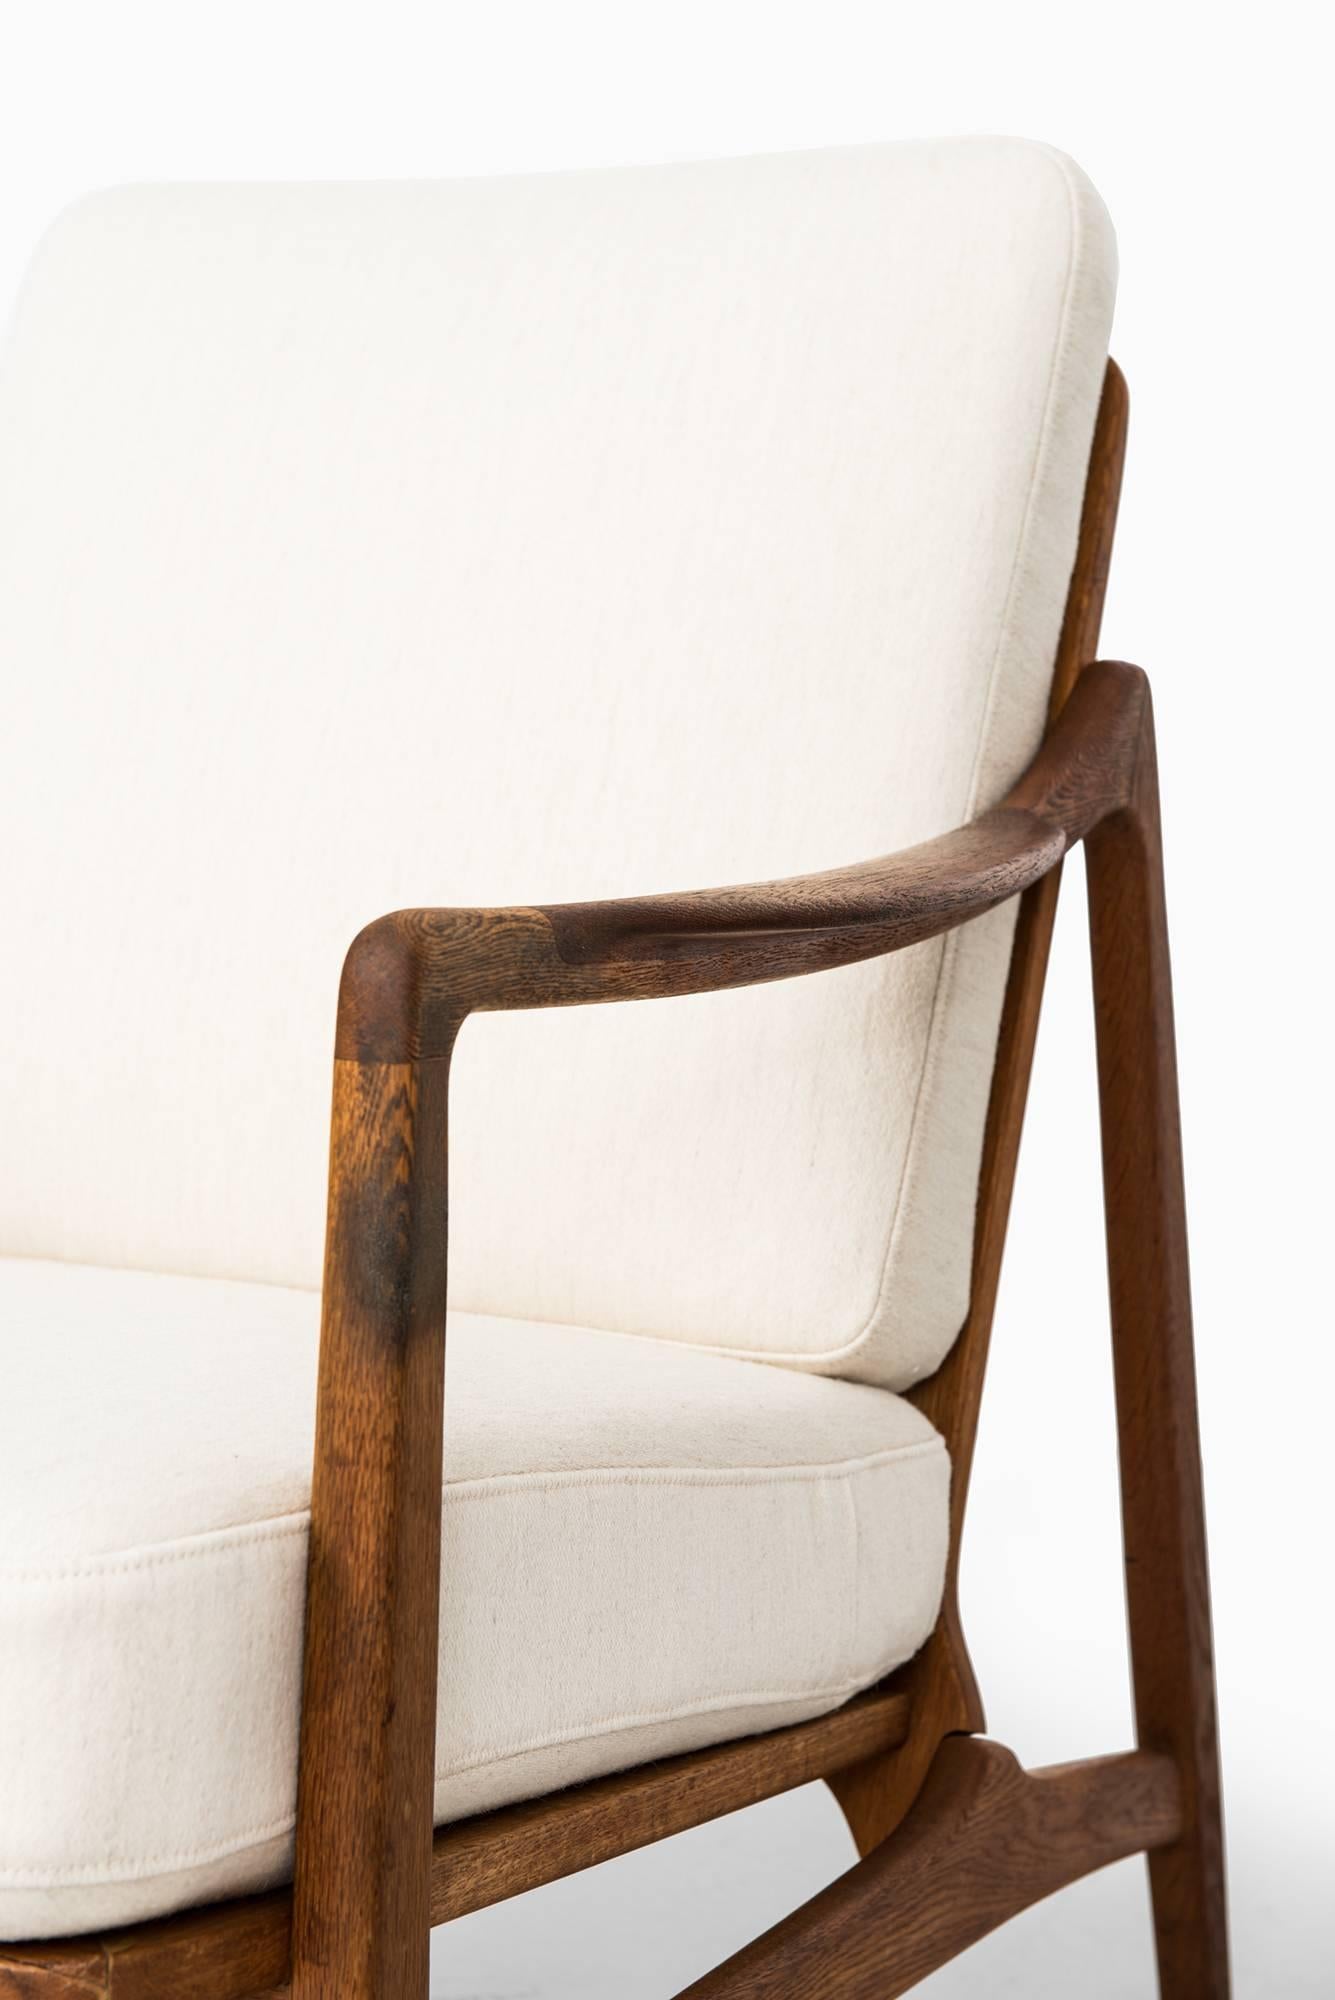 Fabric Tove & Edvard Kindt-Larsen Easy Chairs Model 117 by France & Daverkosen